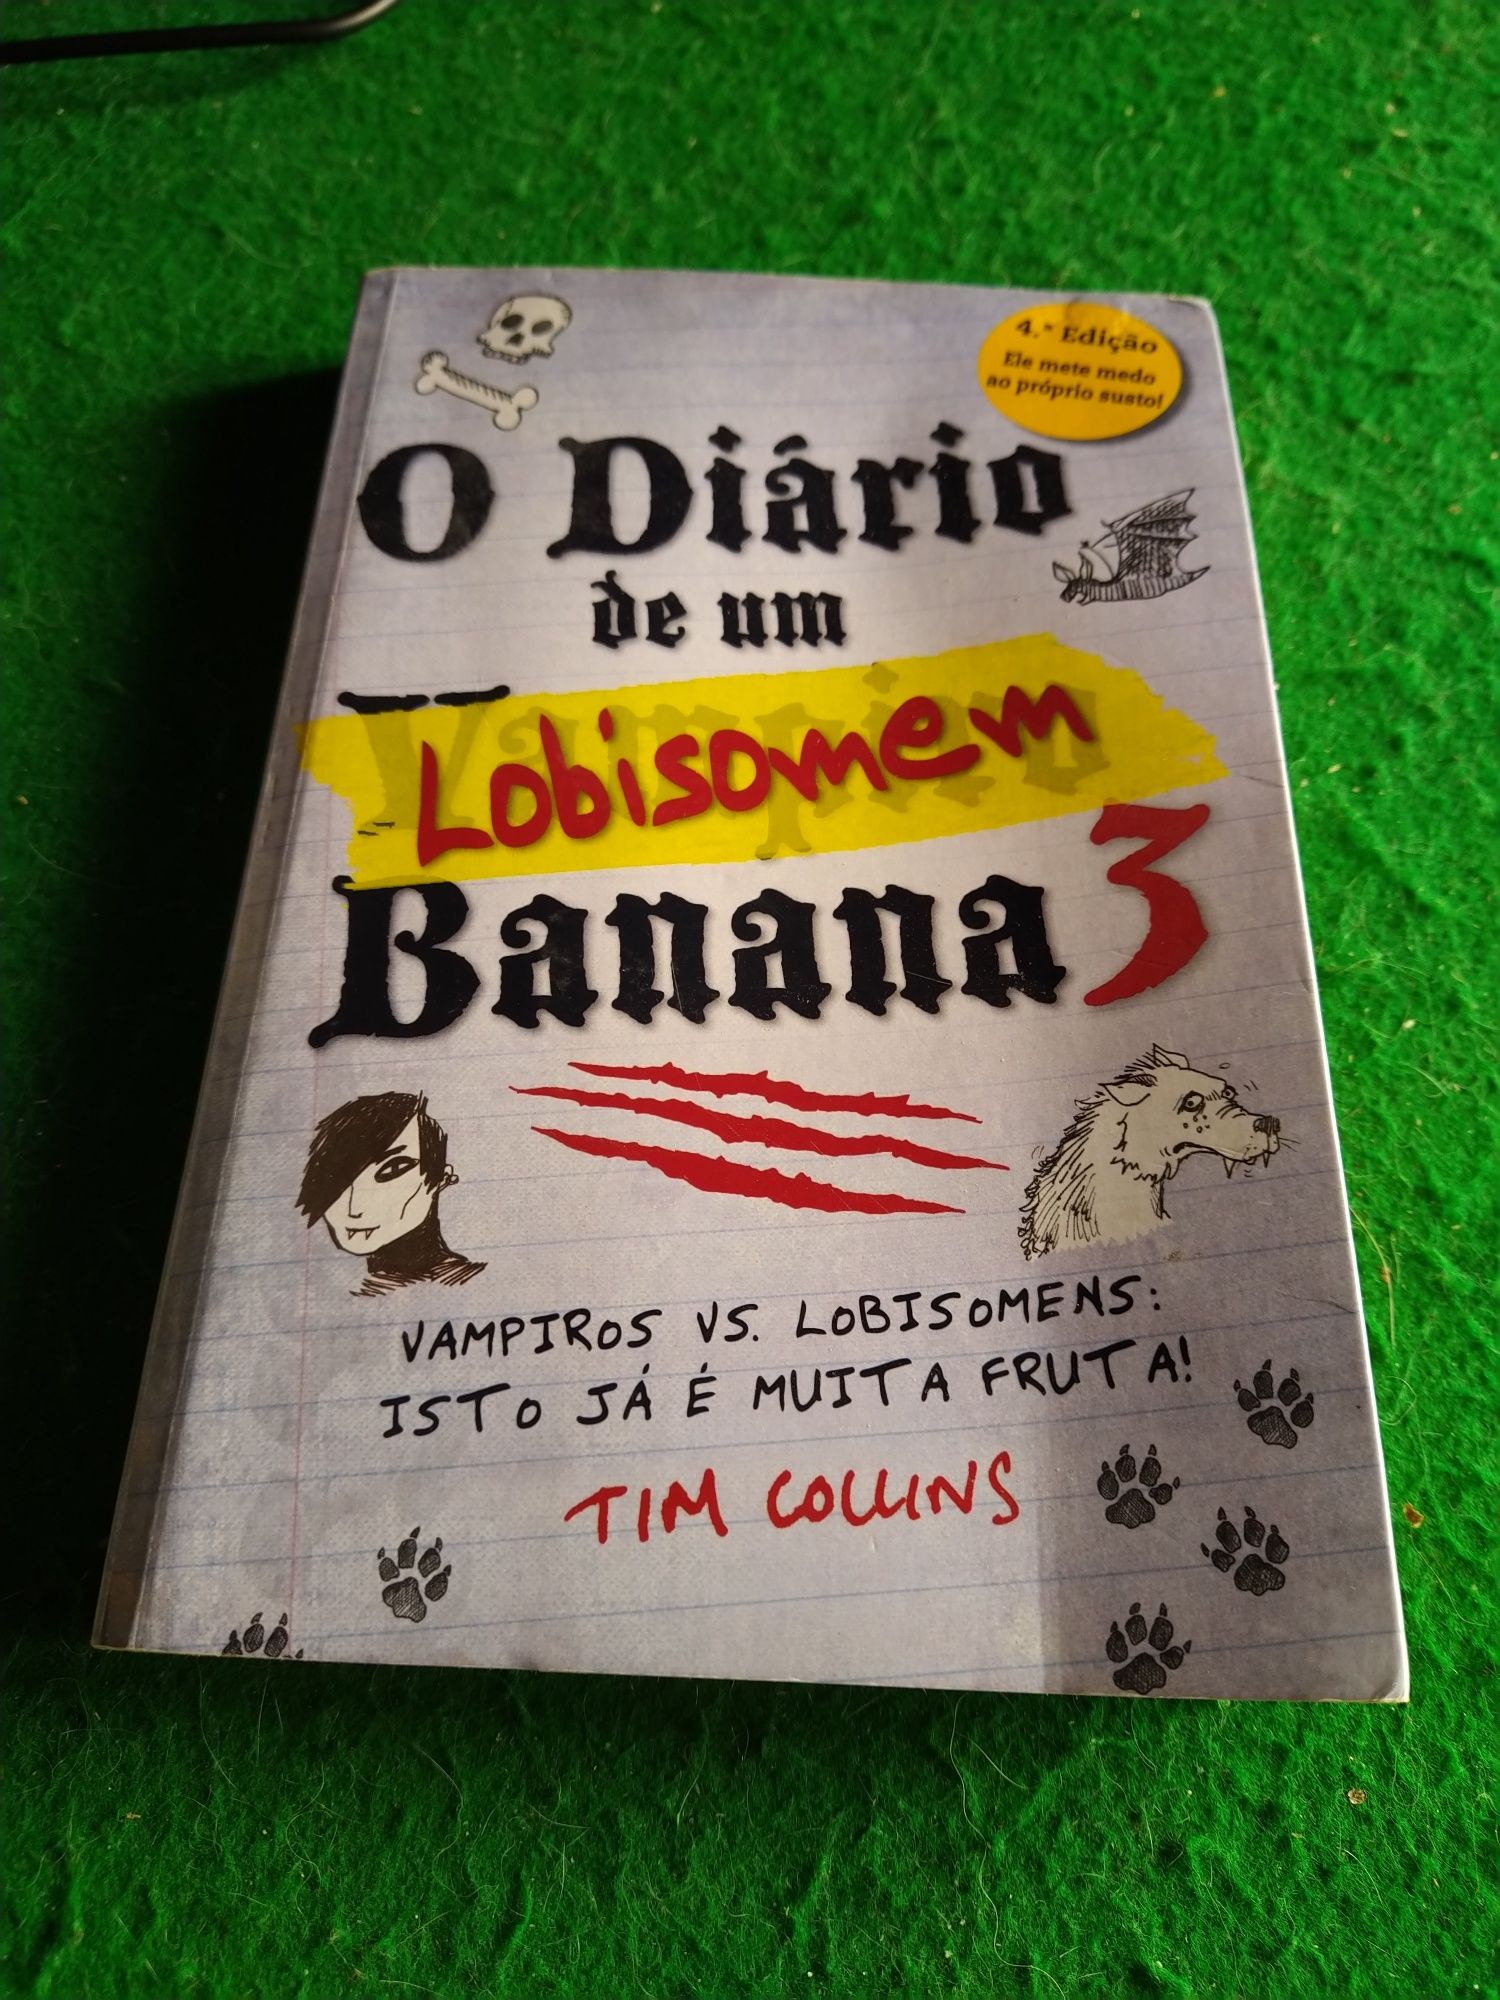 O diário de um lobisomem banana